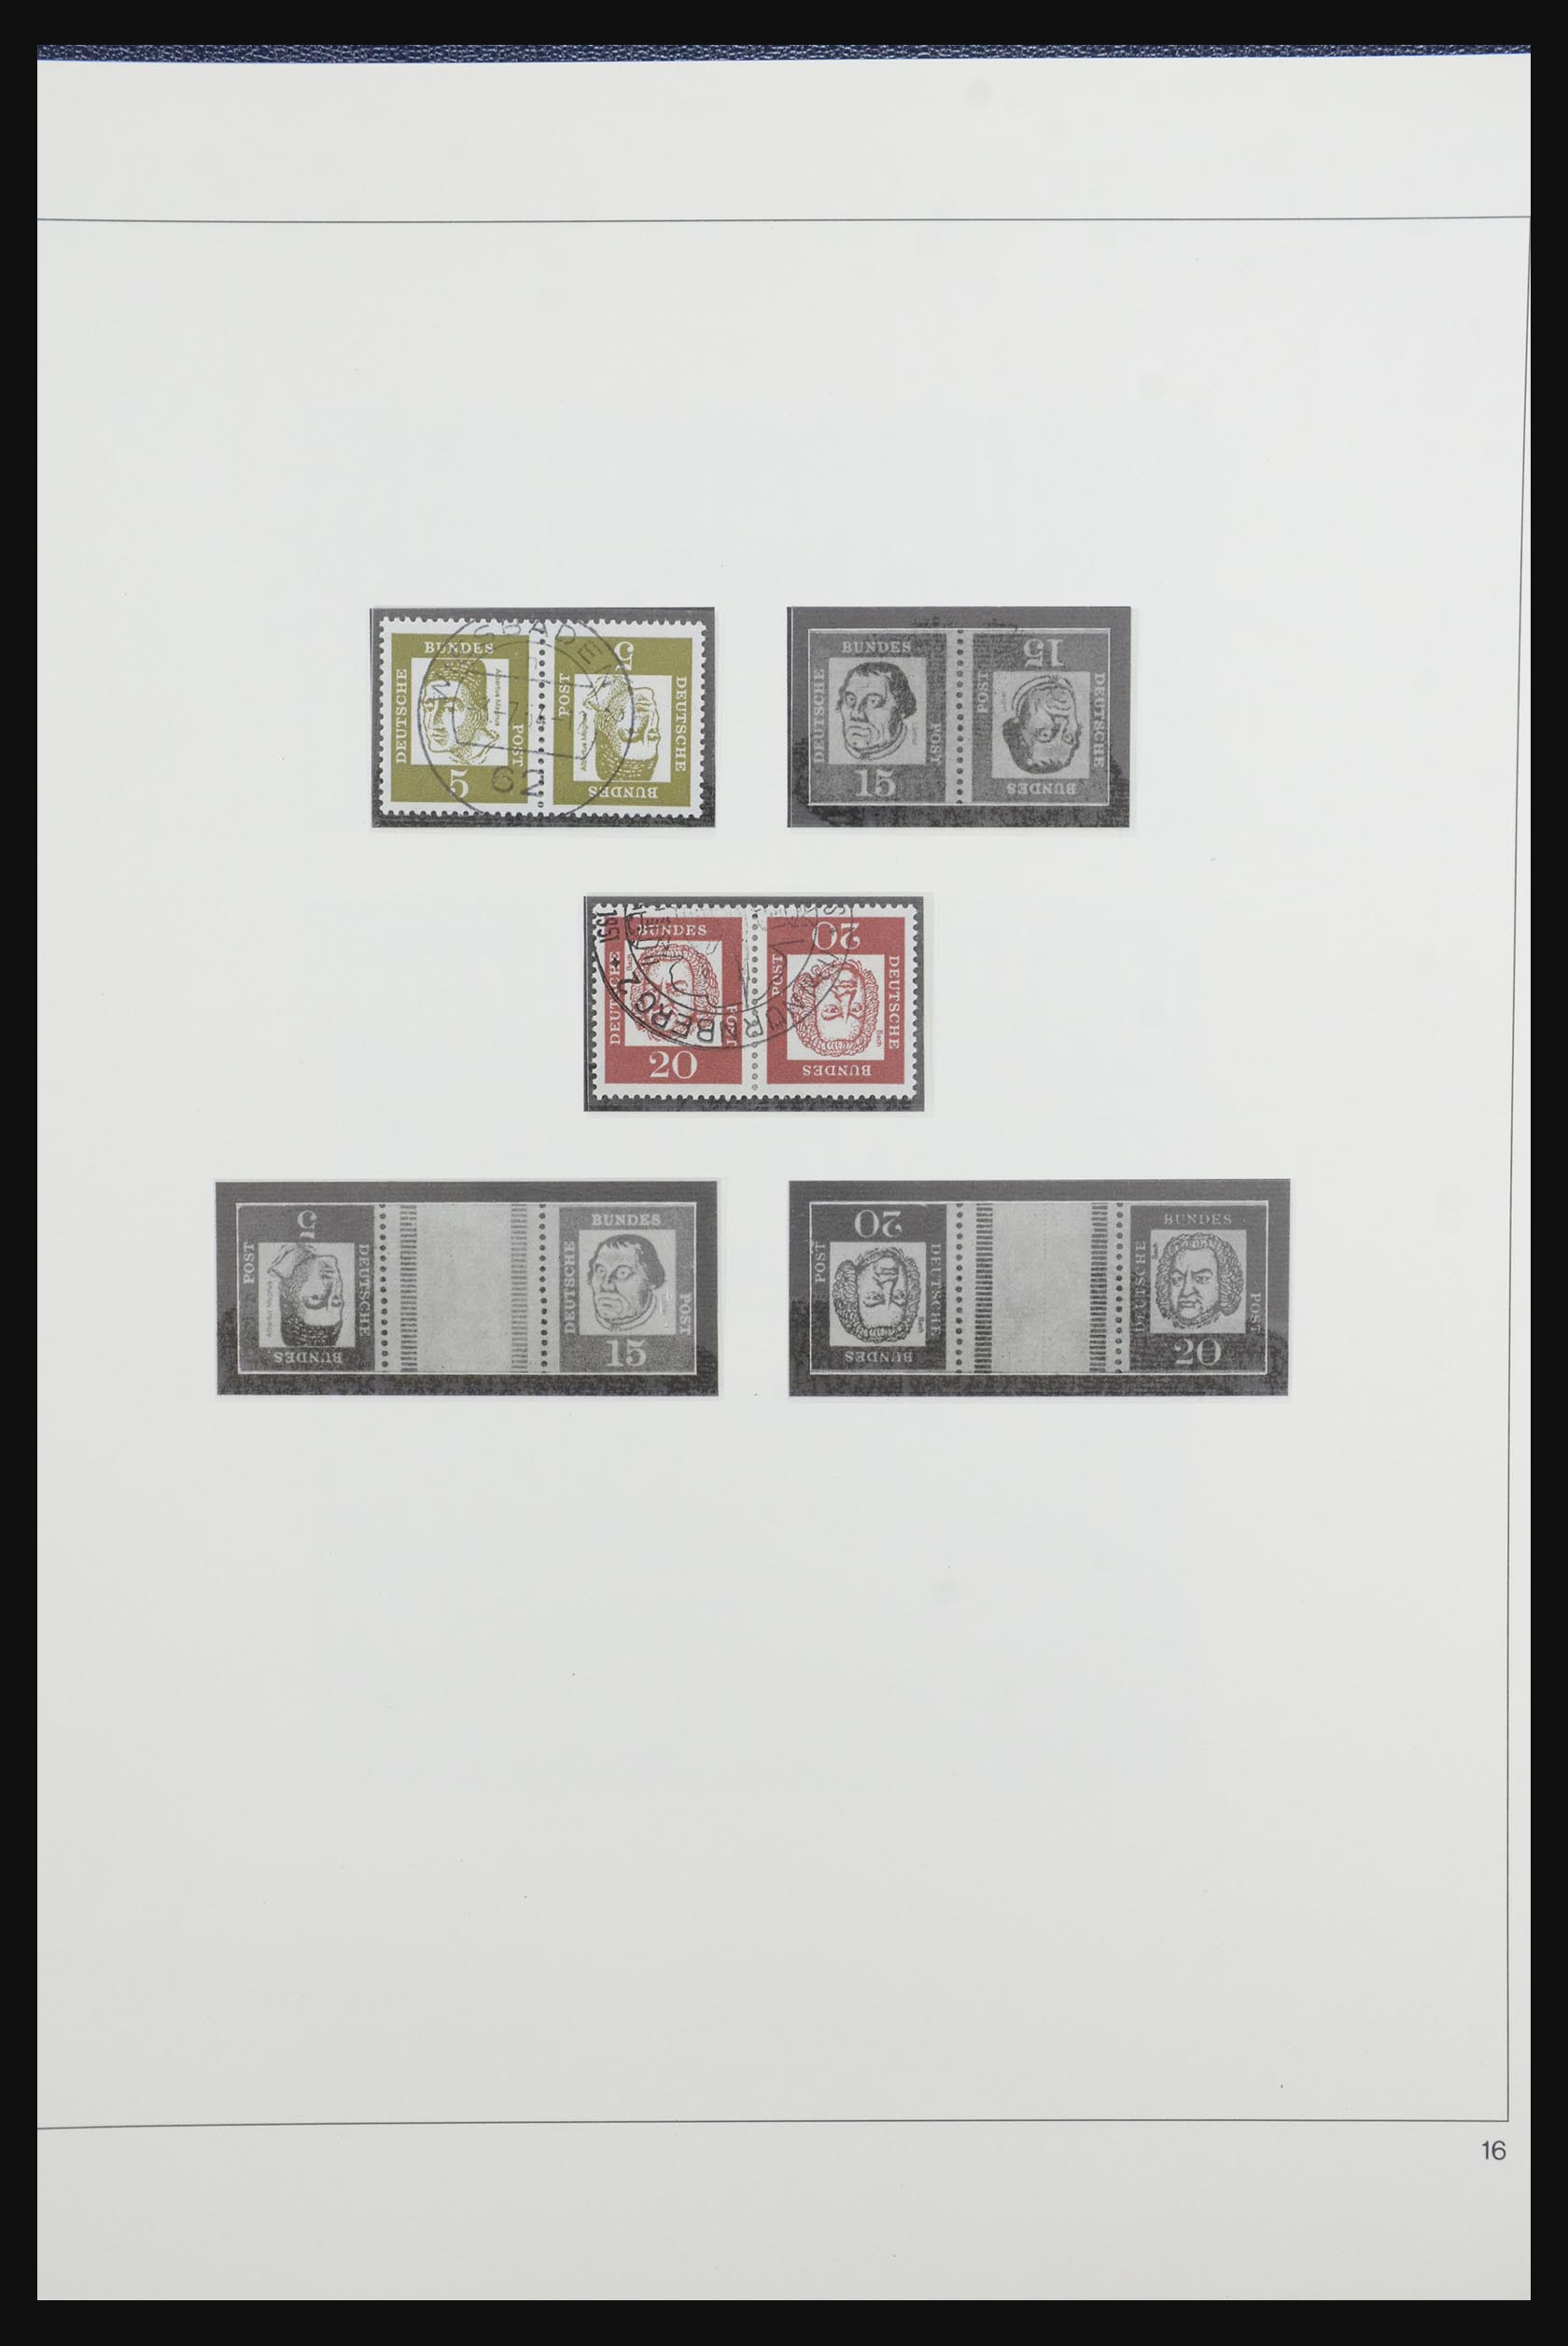 31842 021 - 31842 Bundespost combinaties 1951-2003.